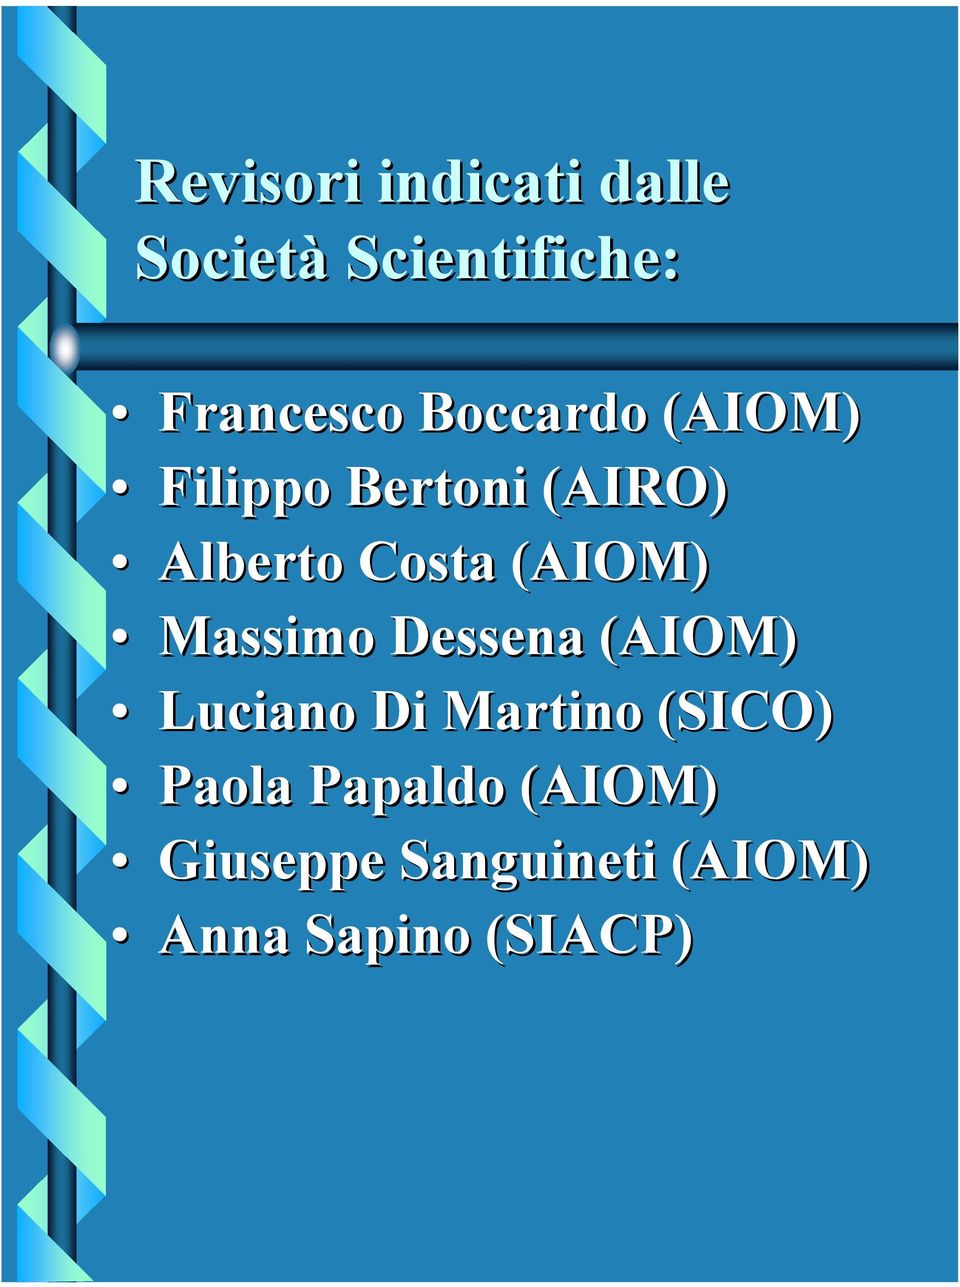 (AIOM) Massimo Dessena (AIOM) Luciano Di Martino (SICO)